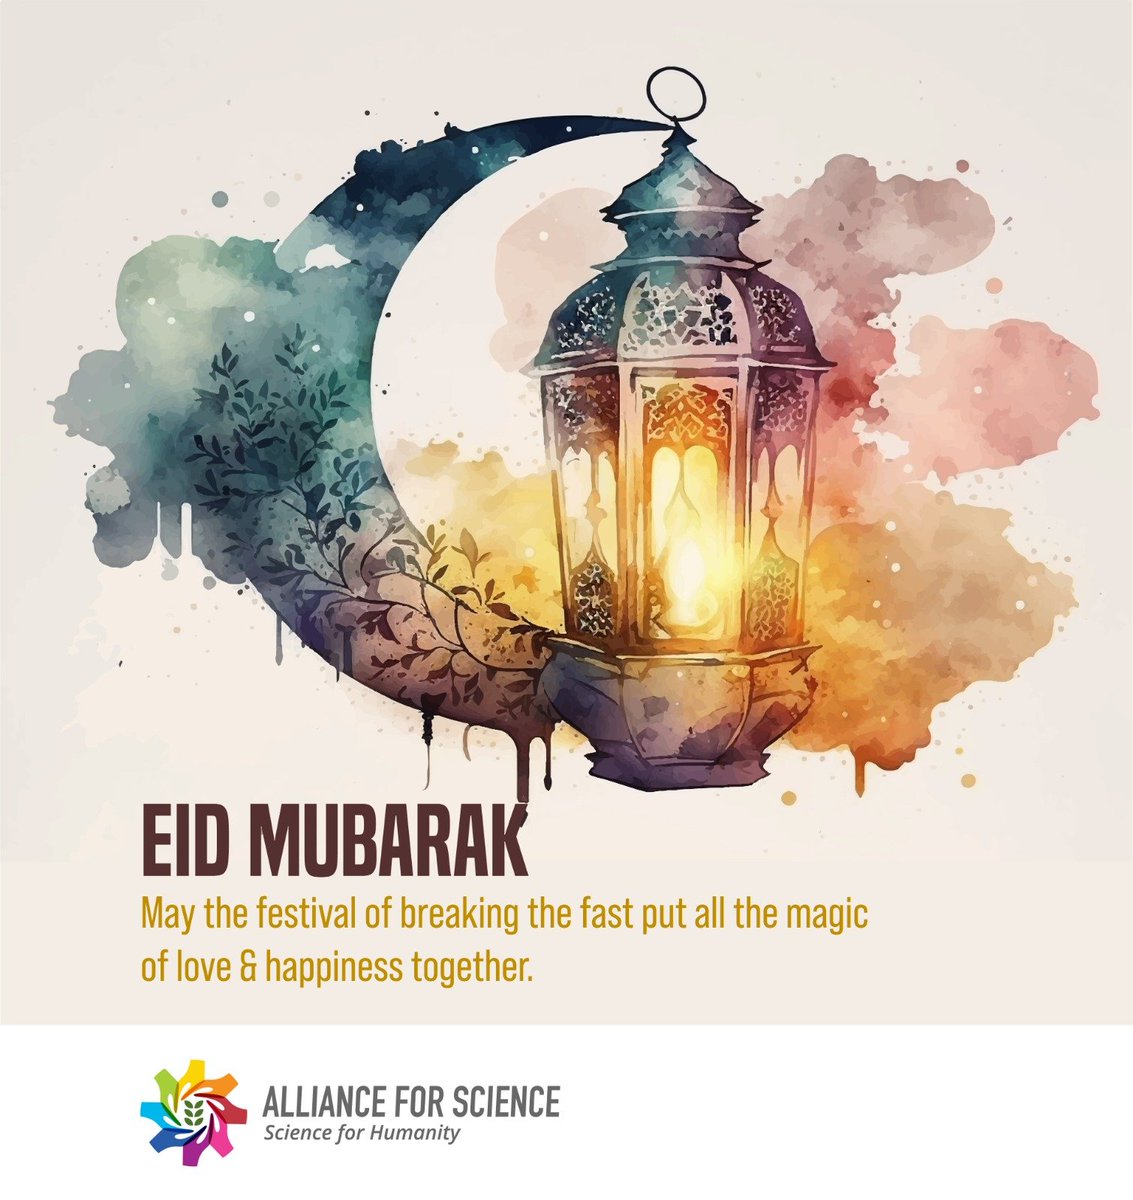 Happy #EidMubarak